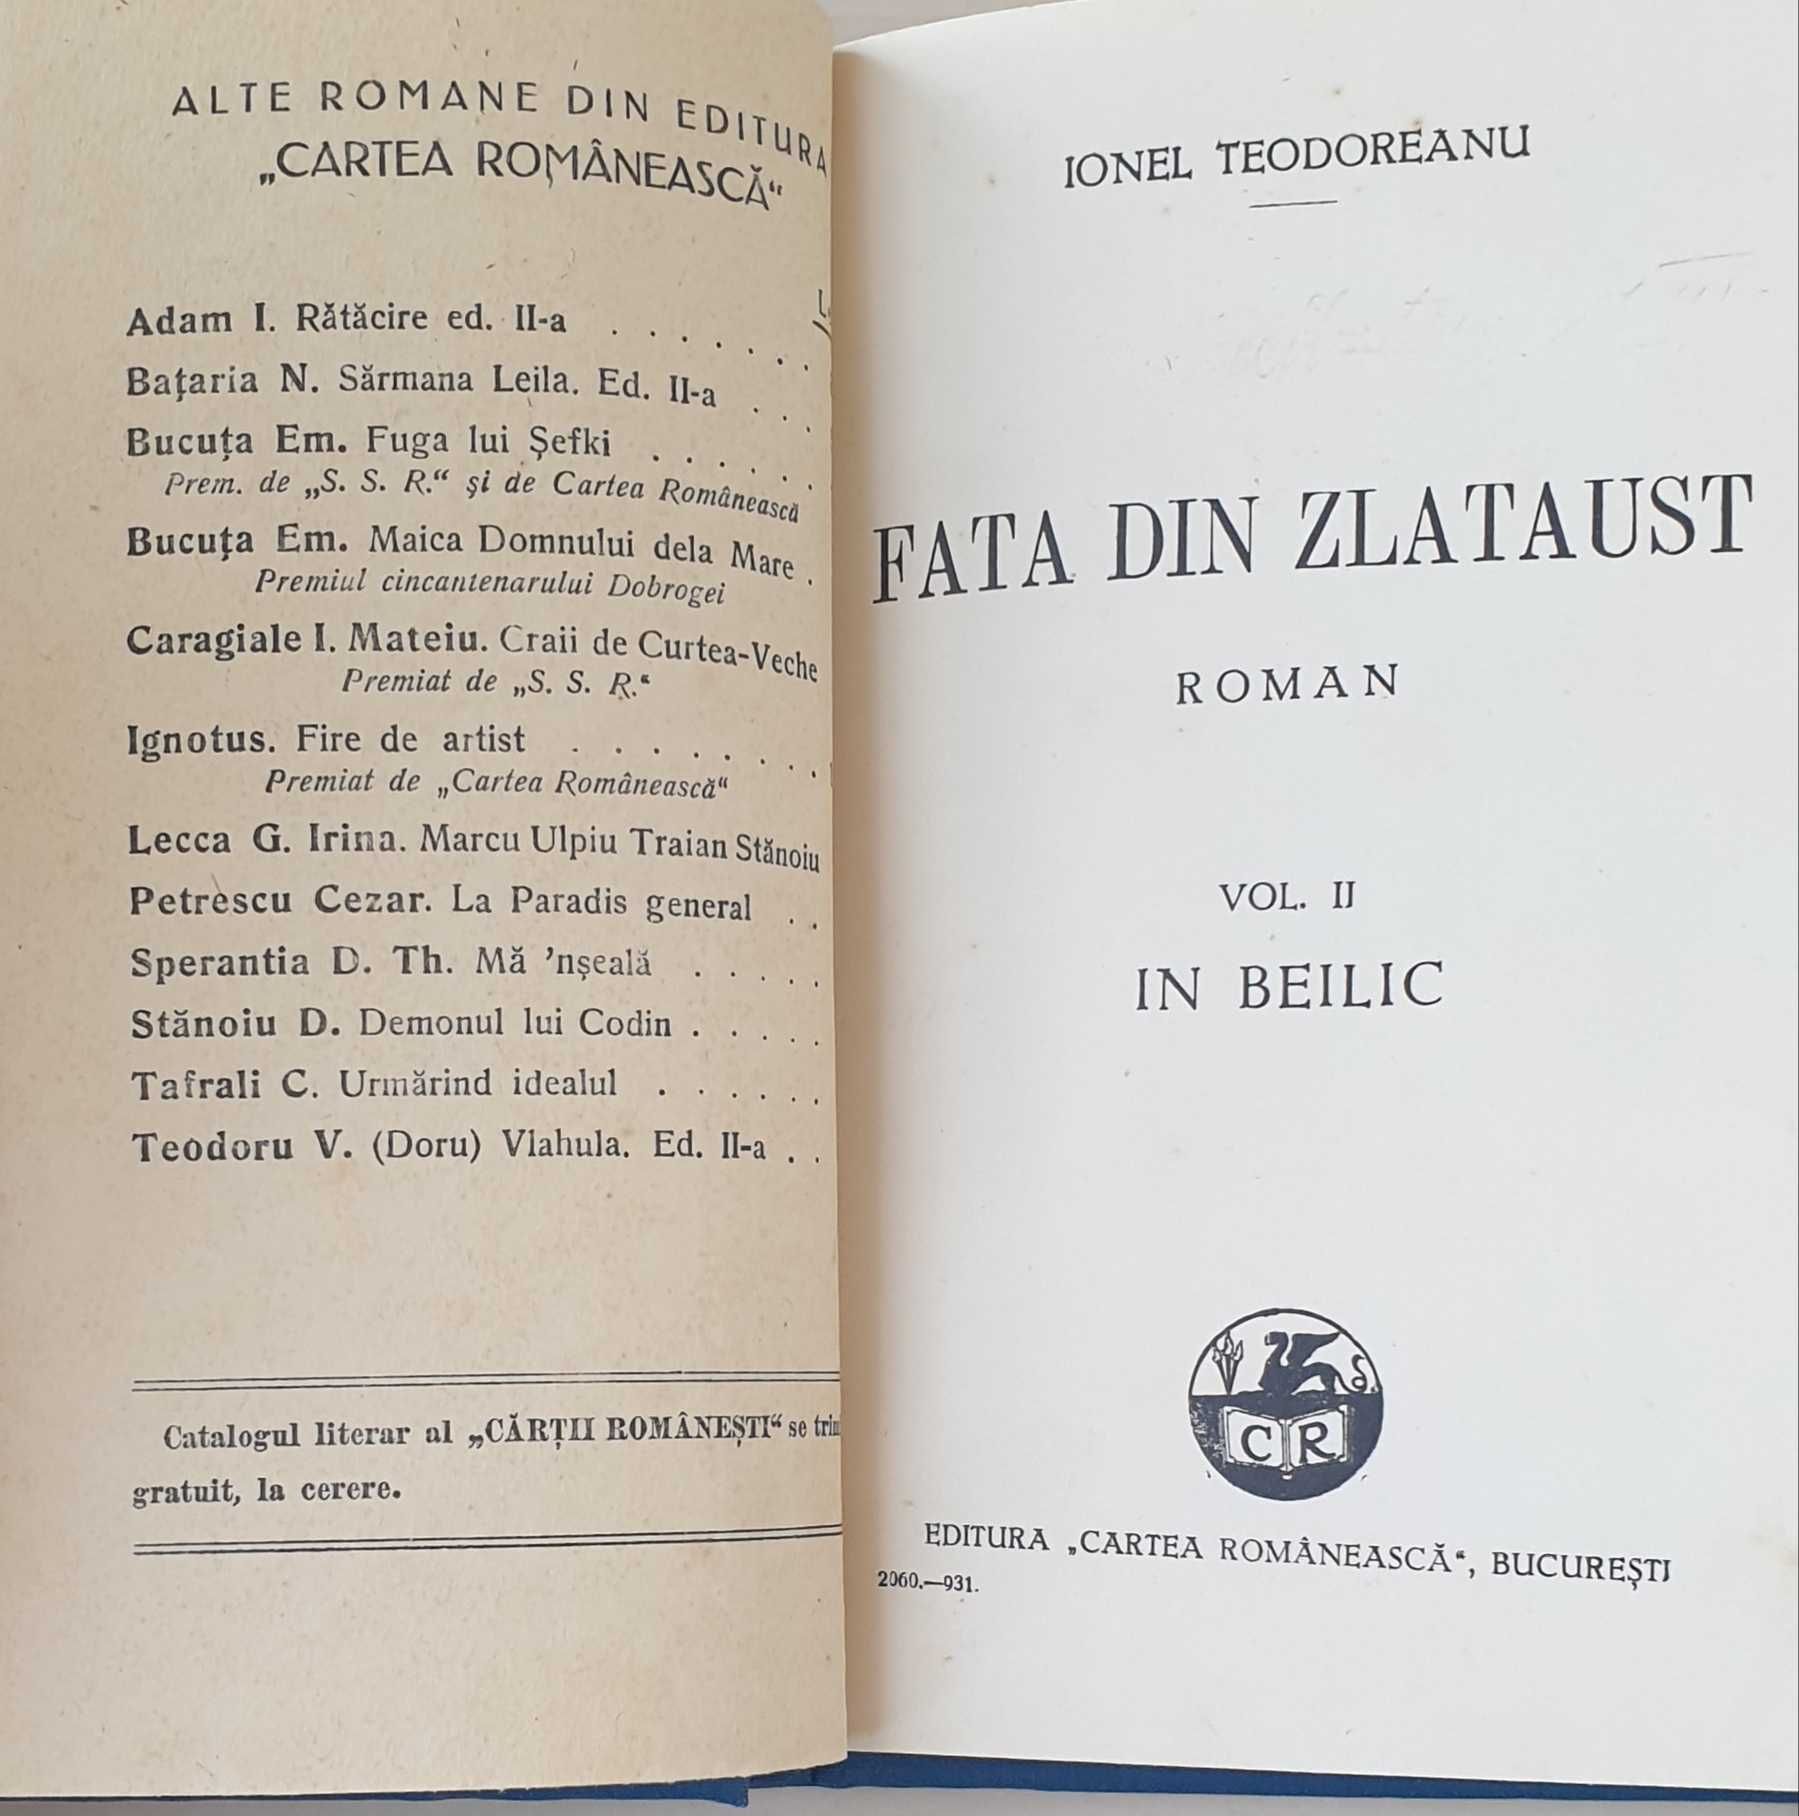 Fata din Zlataust, vol. I şi vol. II, Cartea românească, 1932.